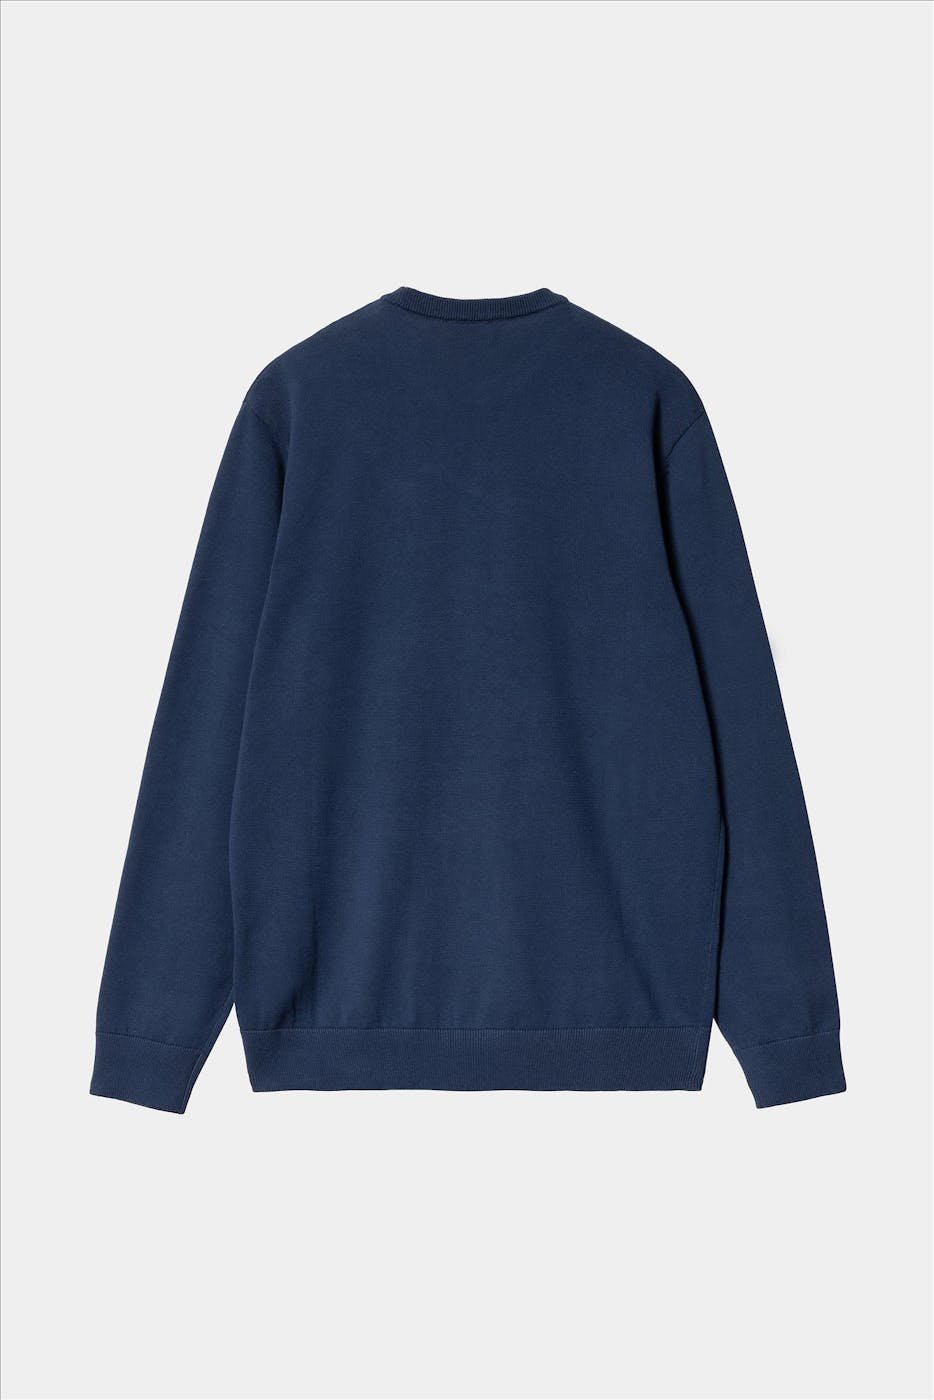 Carhartt WIP - Donkerblauwe Madison sweater